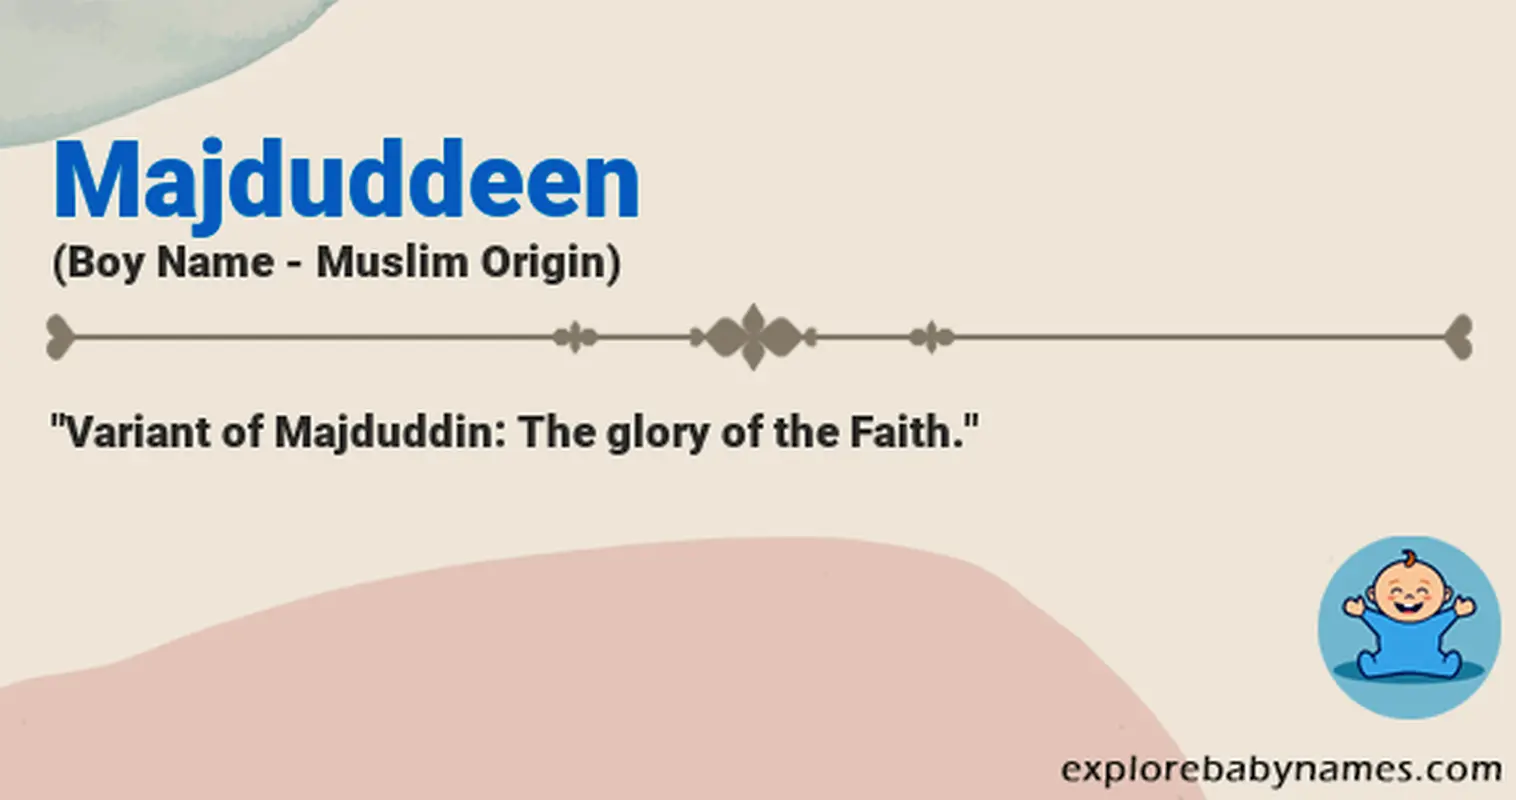 Meaning of Majduddeen